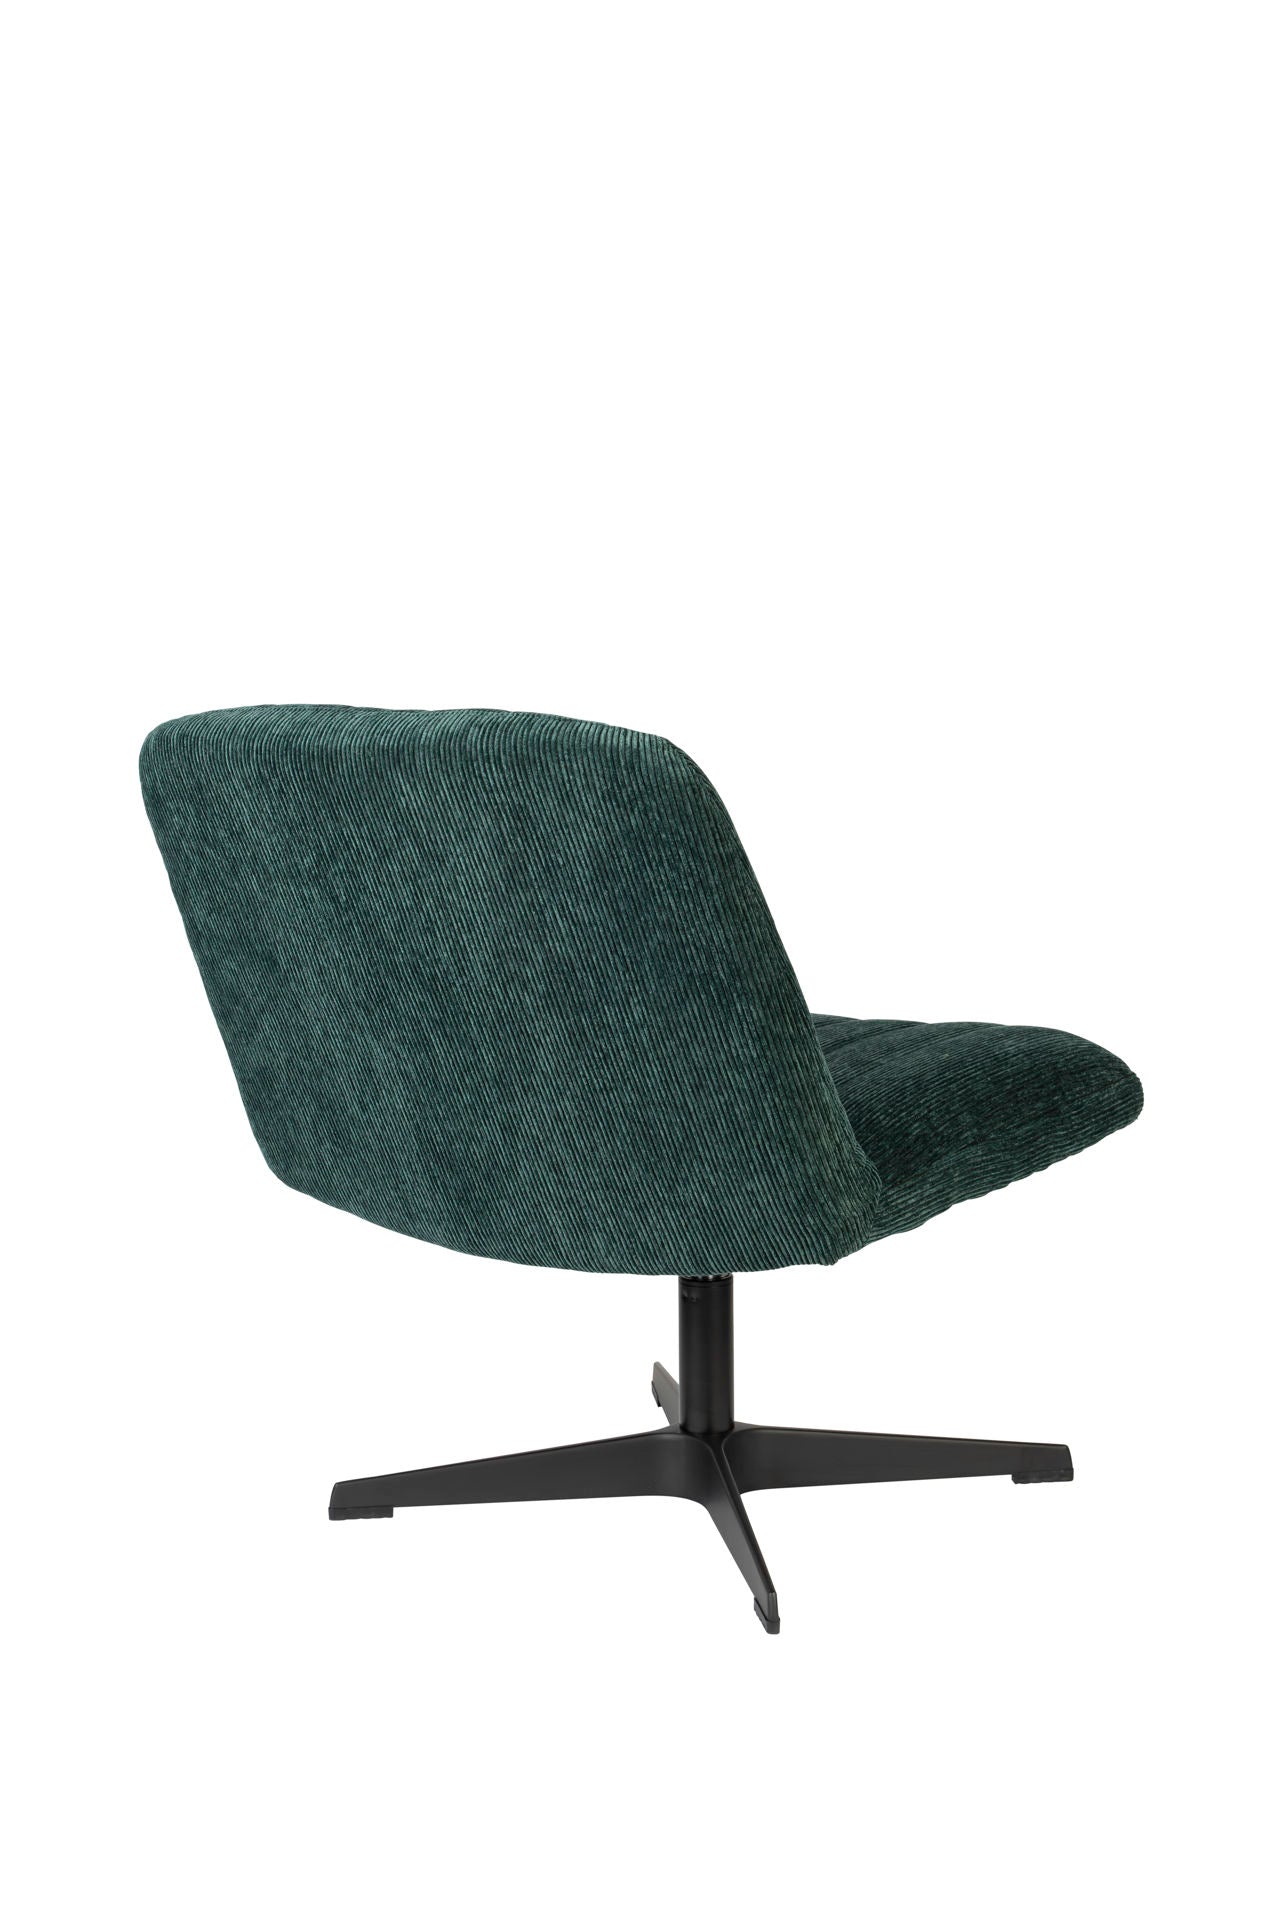 Nancy's El Campo Lounge Chair - Industriel - Vert - Polyester, Contreplaqué, Acier - 71 cm x 65 cm x 72,5 cm